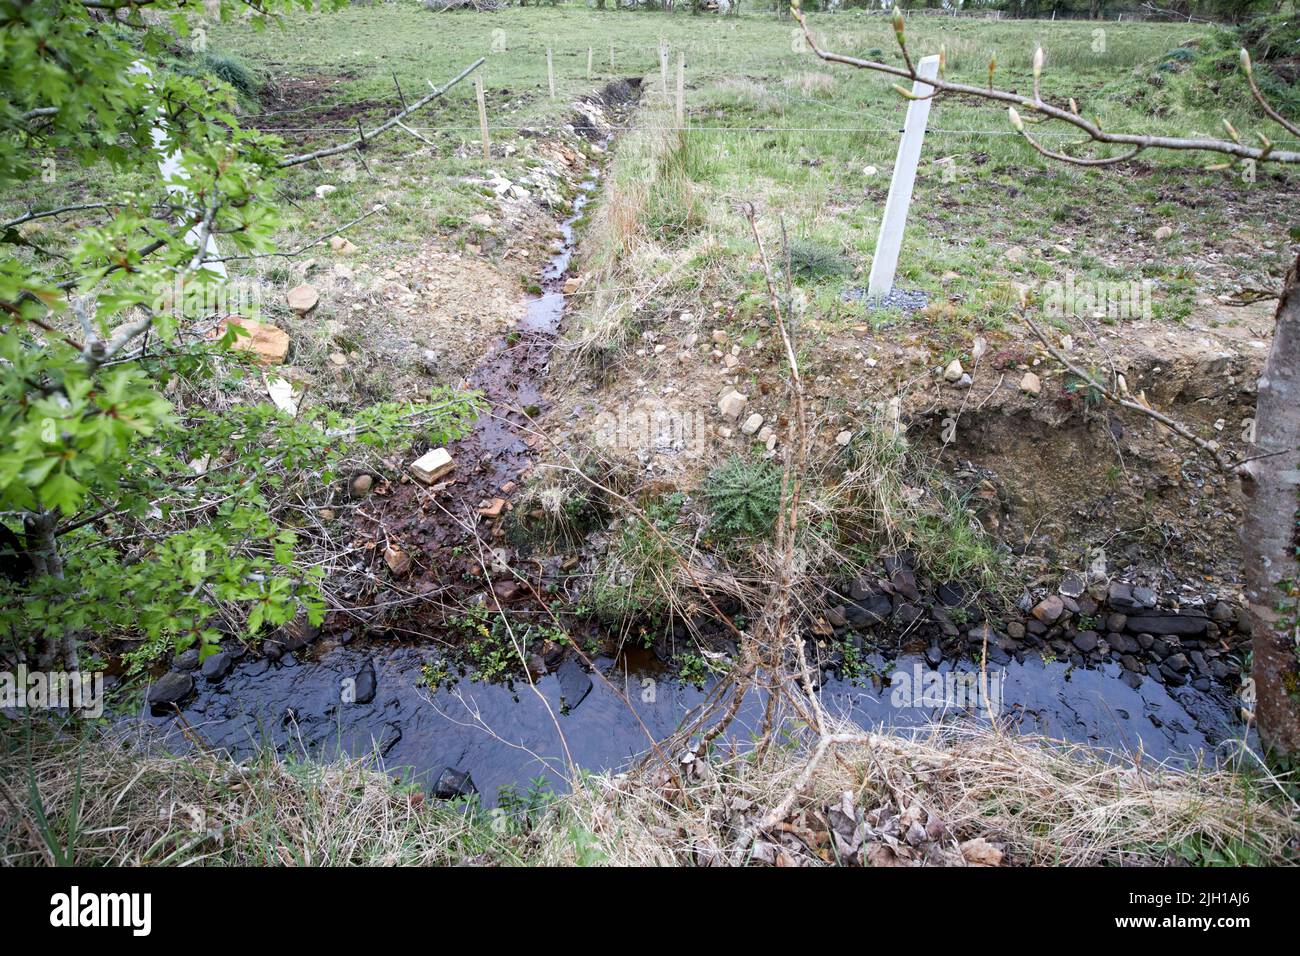 Des fossés de drainage creusés dans des boghei humides dans le comté de Castlebar, en république d'irlande Banque D'Images